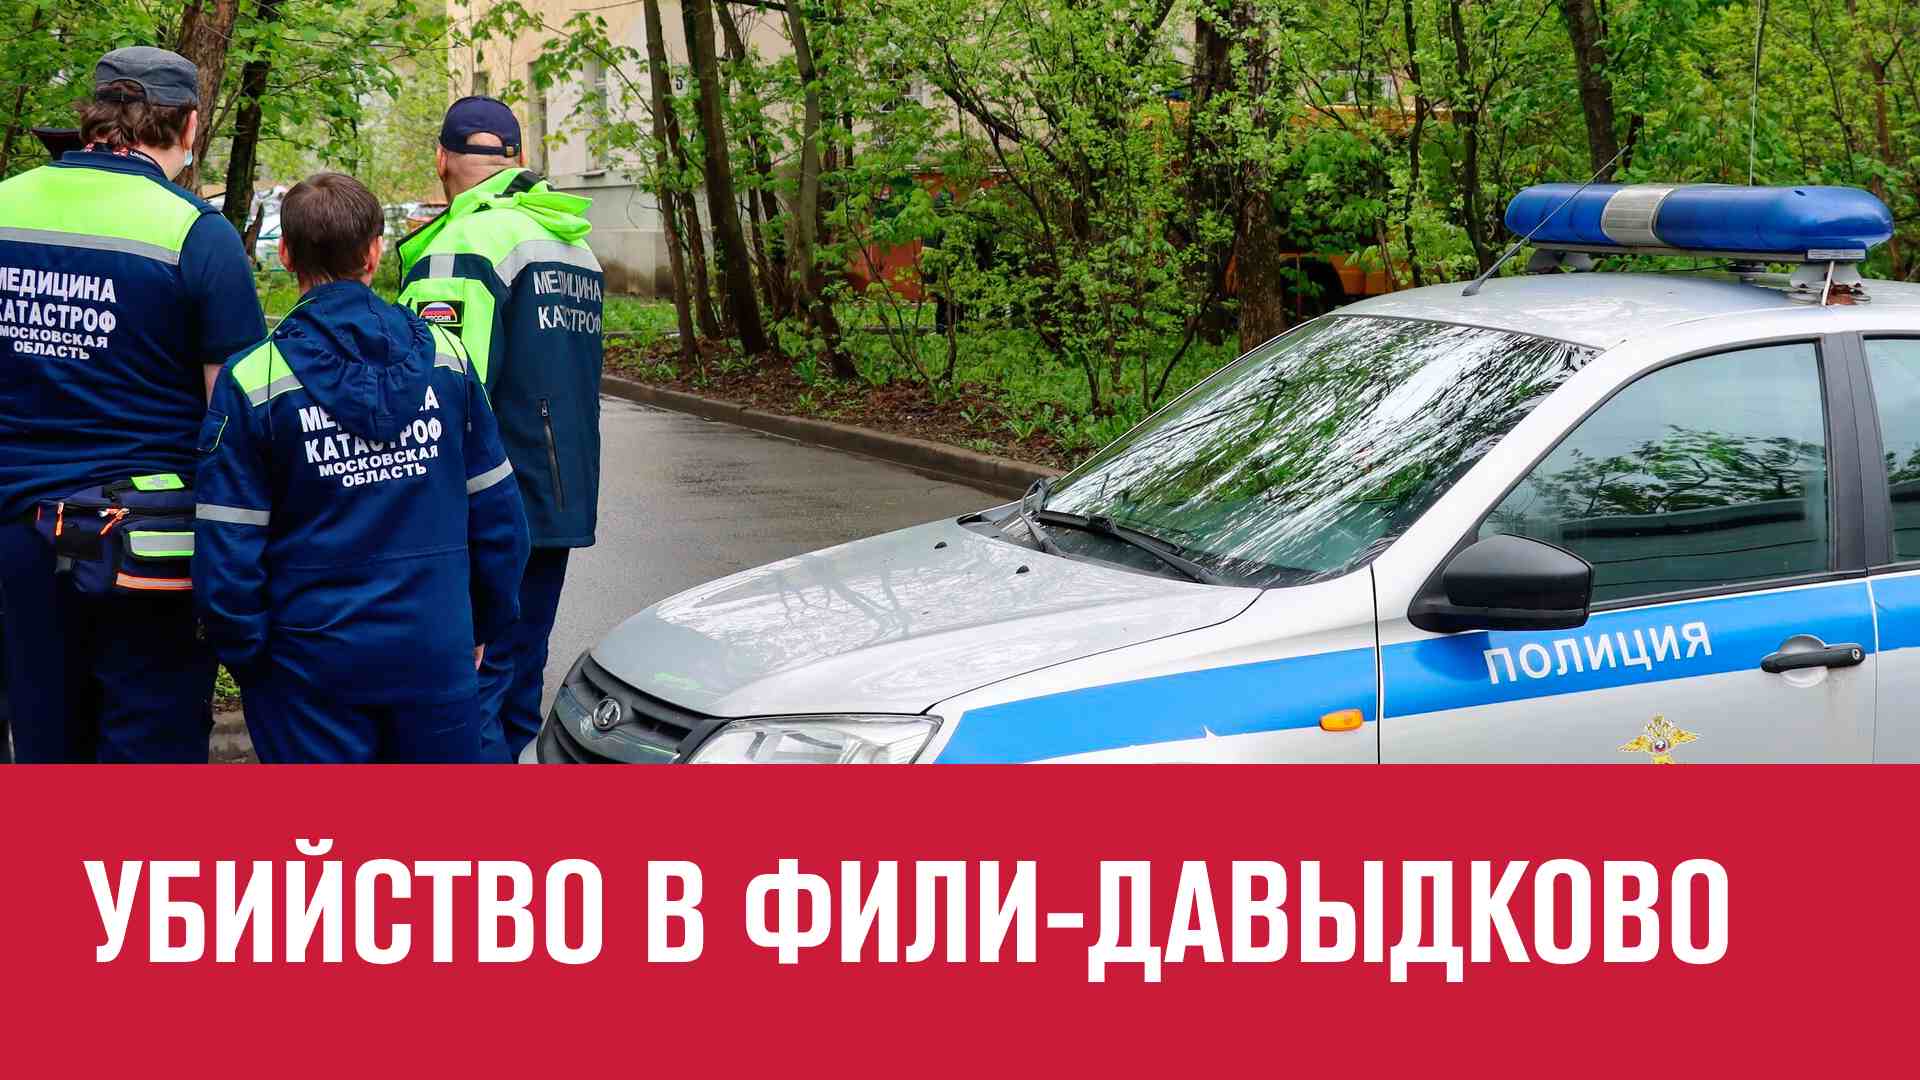 Заказное убийство в Фили-Давыдково - Москва FM